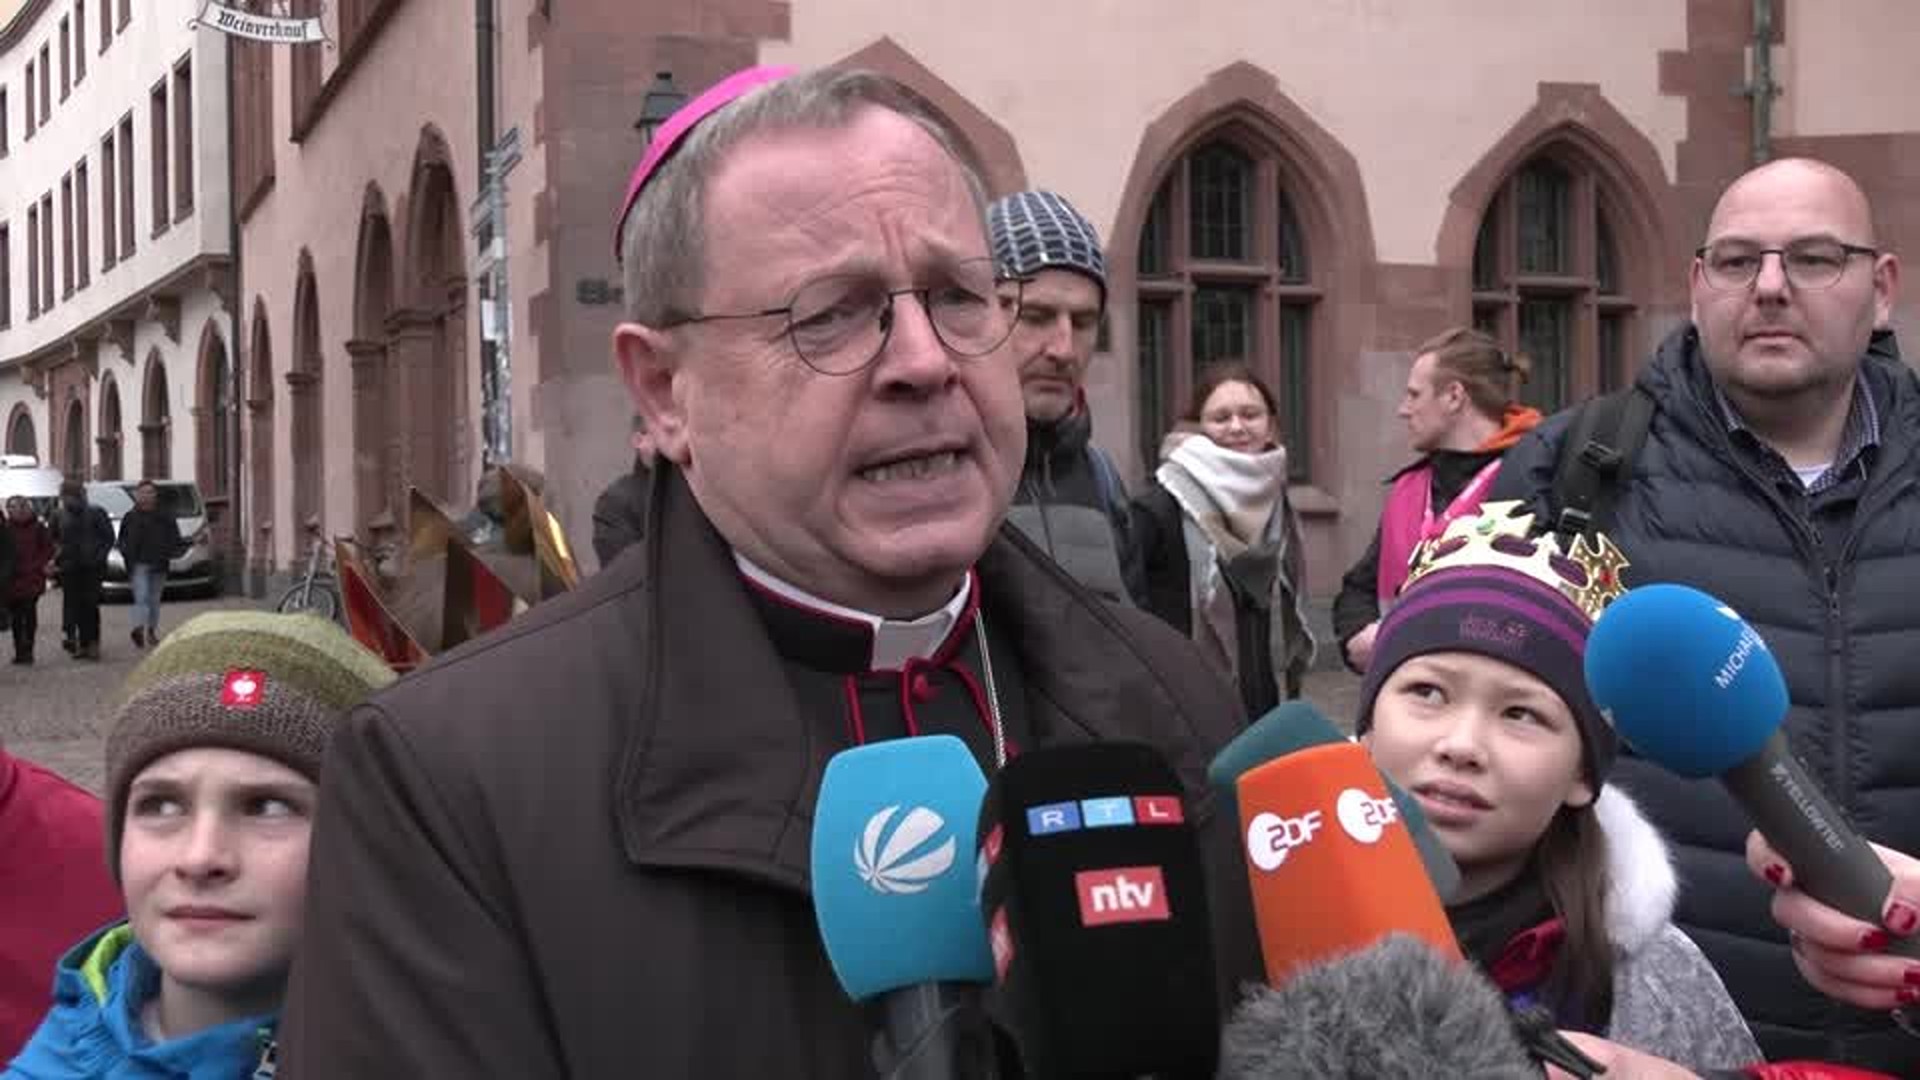 Njemački biskup Bätzing: Vatikan odgađa razgovore o Sinodalnom putu